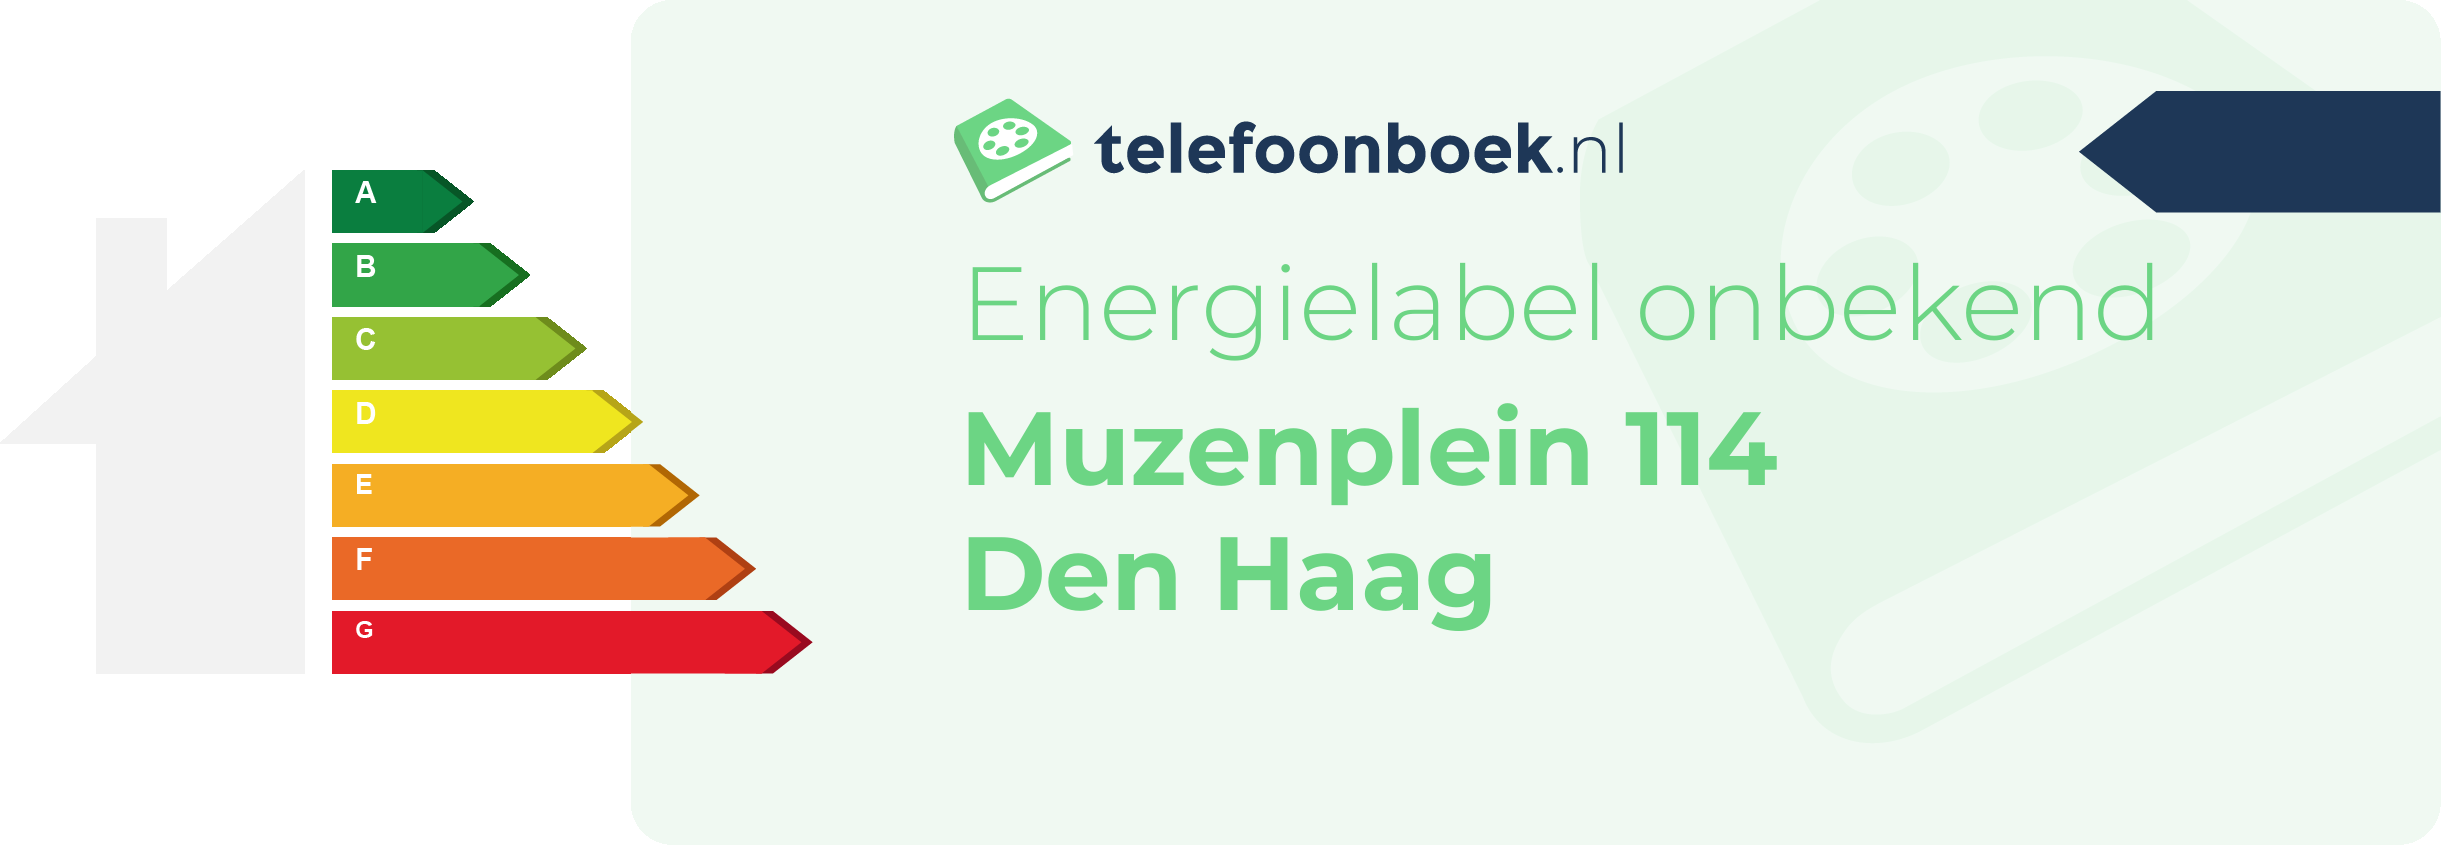 Energielabel Muzenplein 114 Den Haag